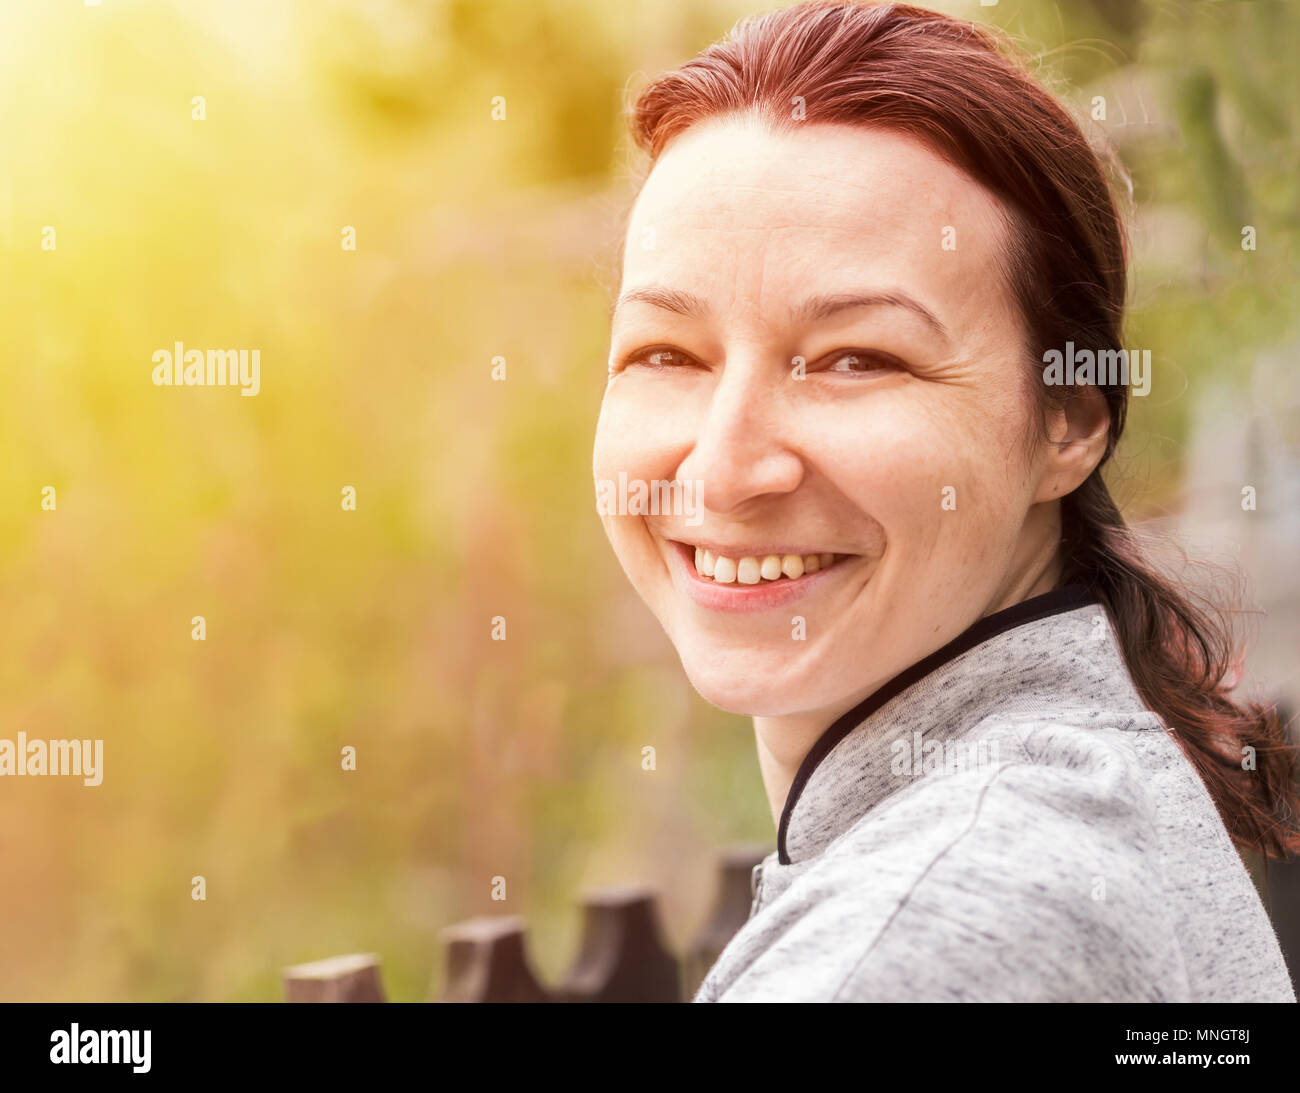 Glückliche junge Frau mit natürlichen Haut in der Natur. Portrait von Frau mit natürlichen Haut, kein Make-up, in die Kamera schaut Stockfoto